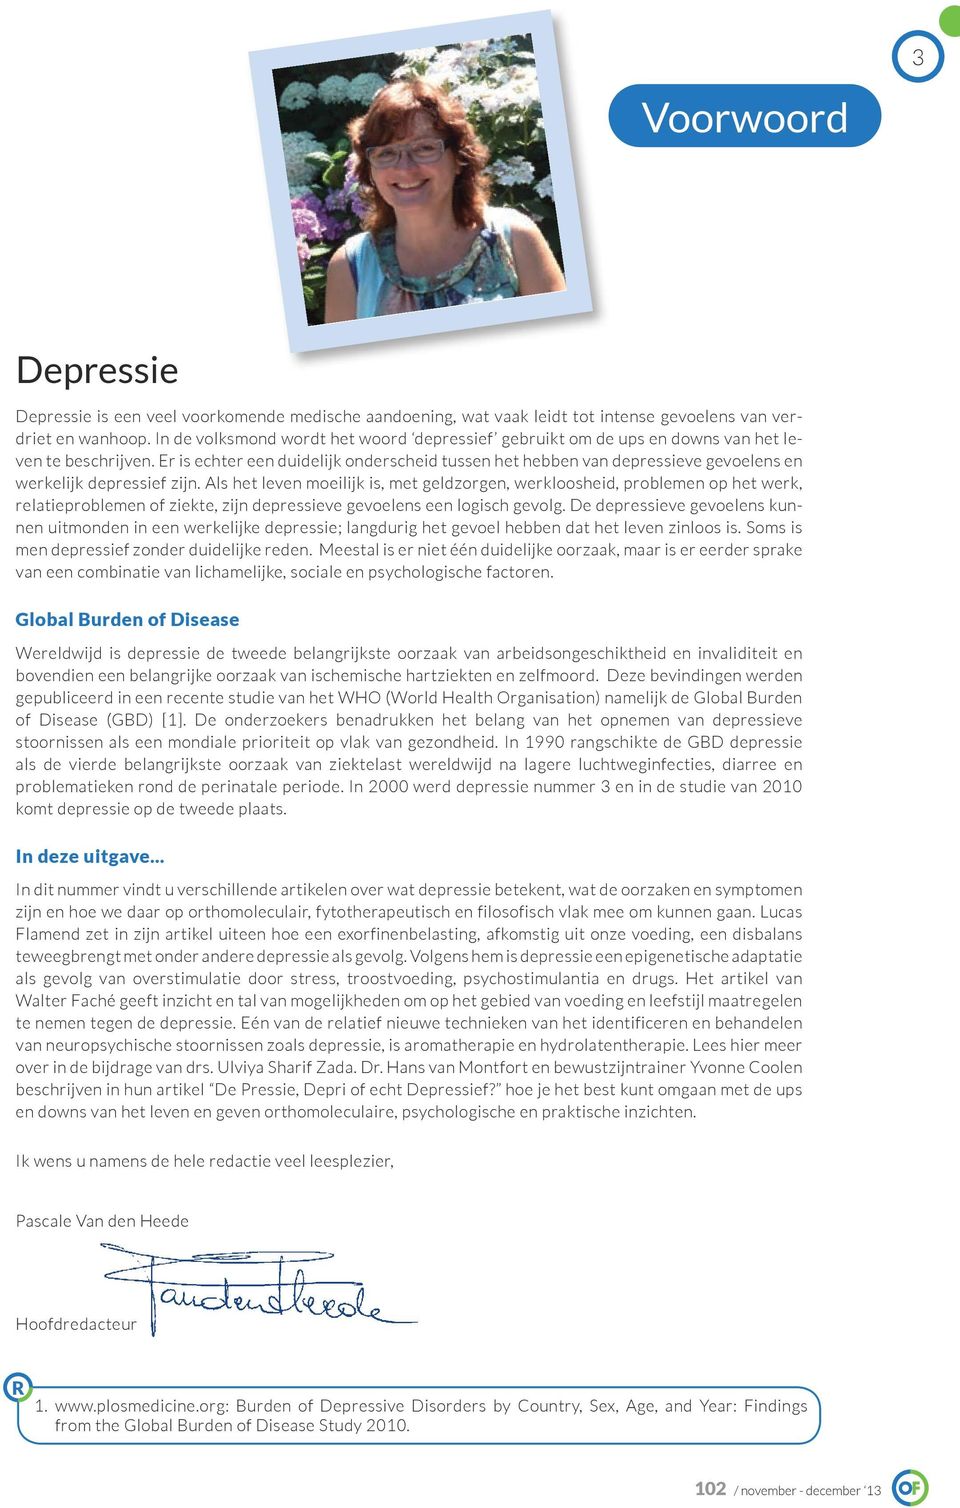 Er is echter een duidelijk onderscheid tussen het hebben van depressieve gevoelens en werkelijk depressief zijn.